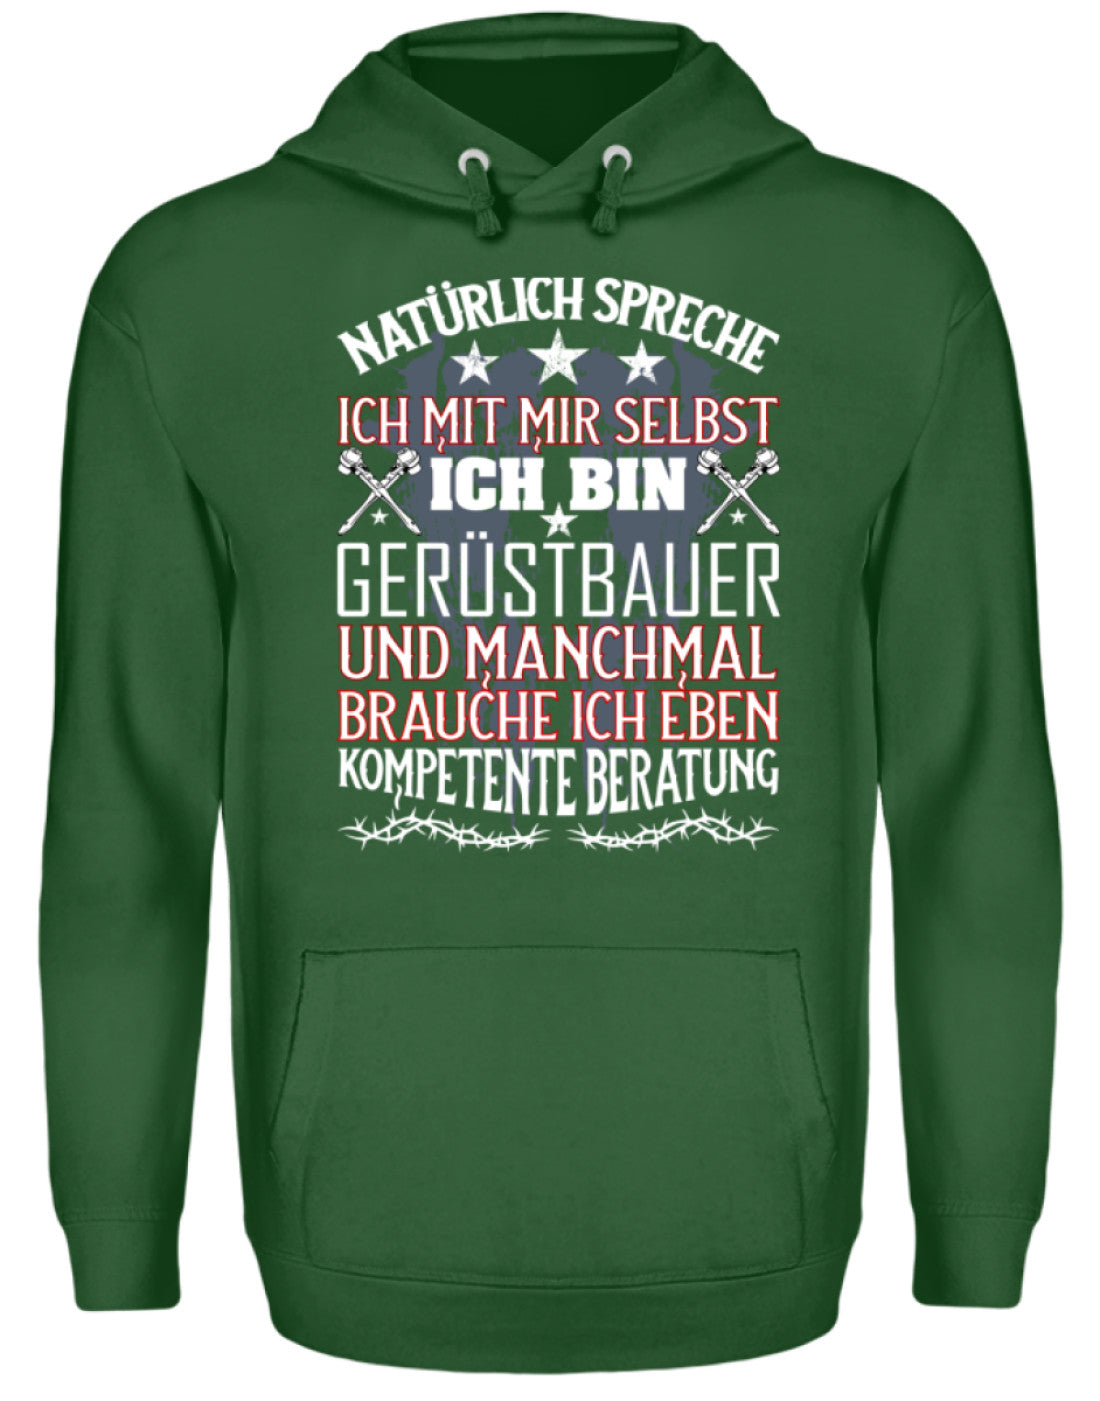 Gerüstbauer / Kompetente Beratung €34.95 Gerüstbauer - Shop >>